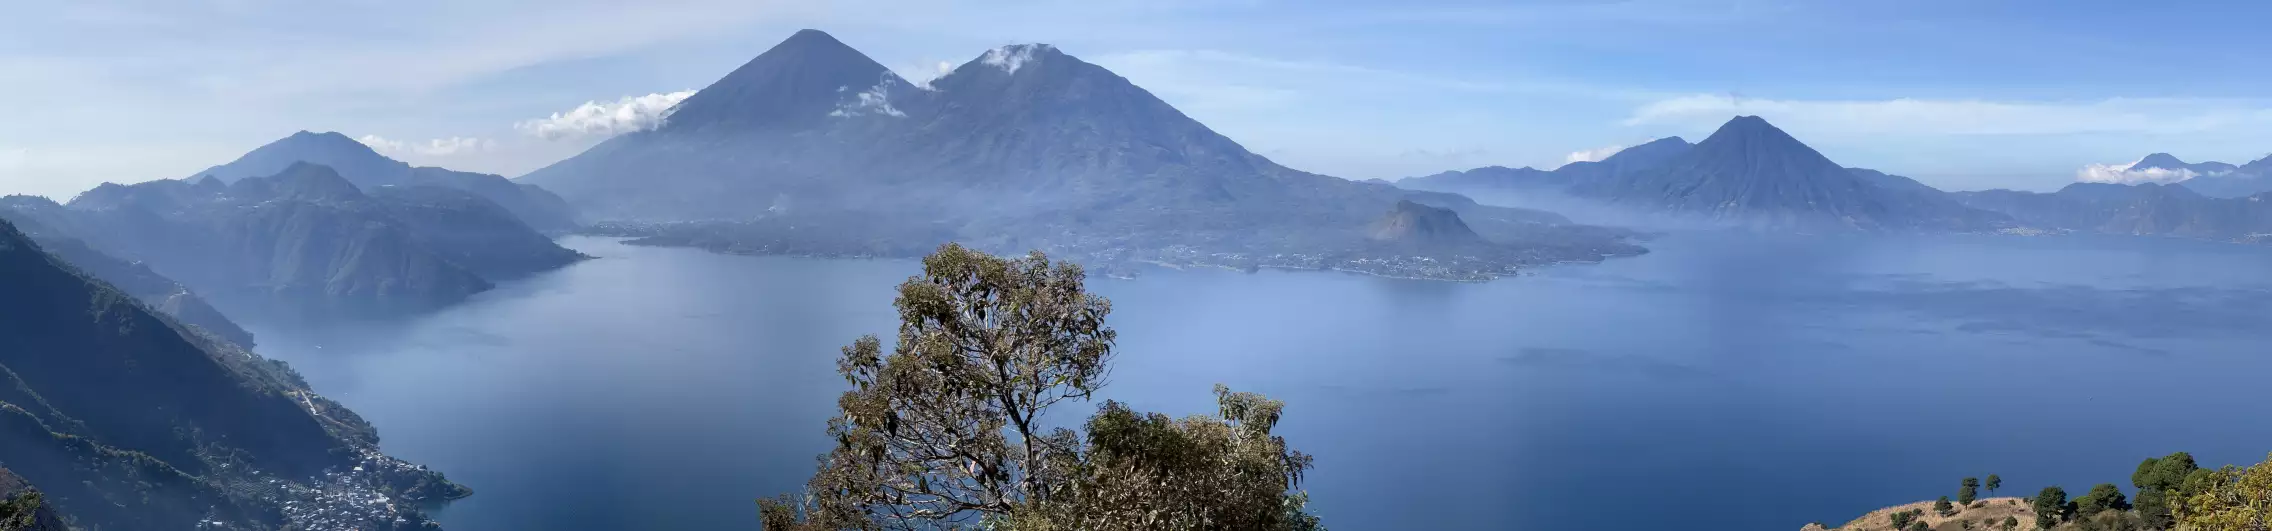 A view over Lake Atitlan